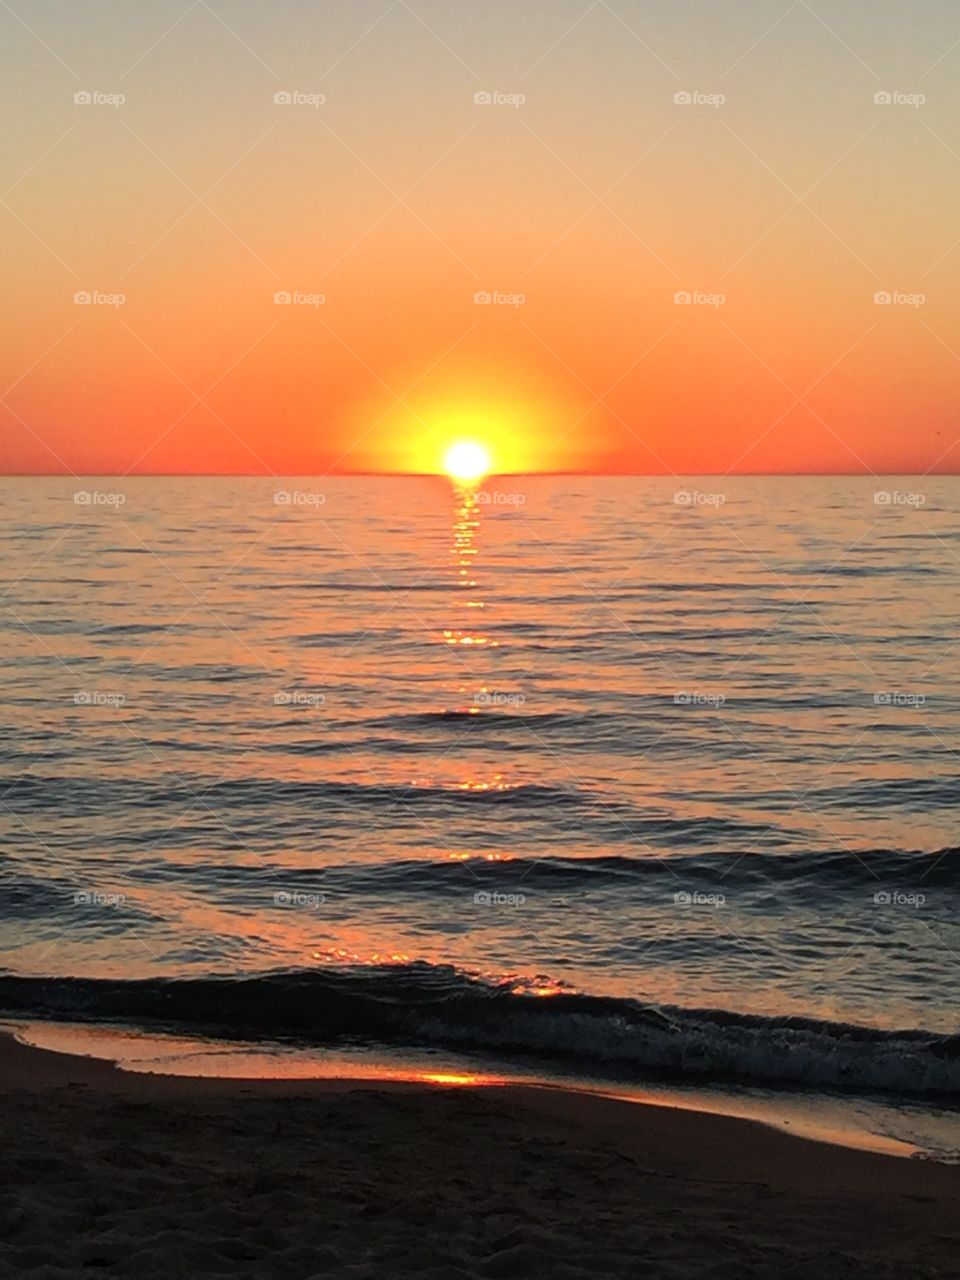 Sunset on Lake Michigan at Saint Joseph 